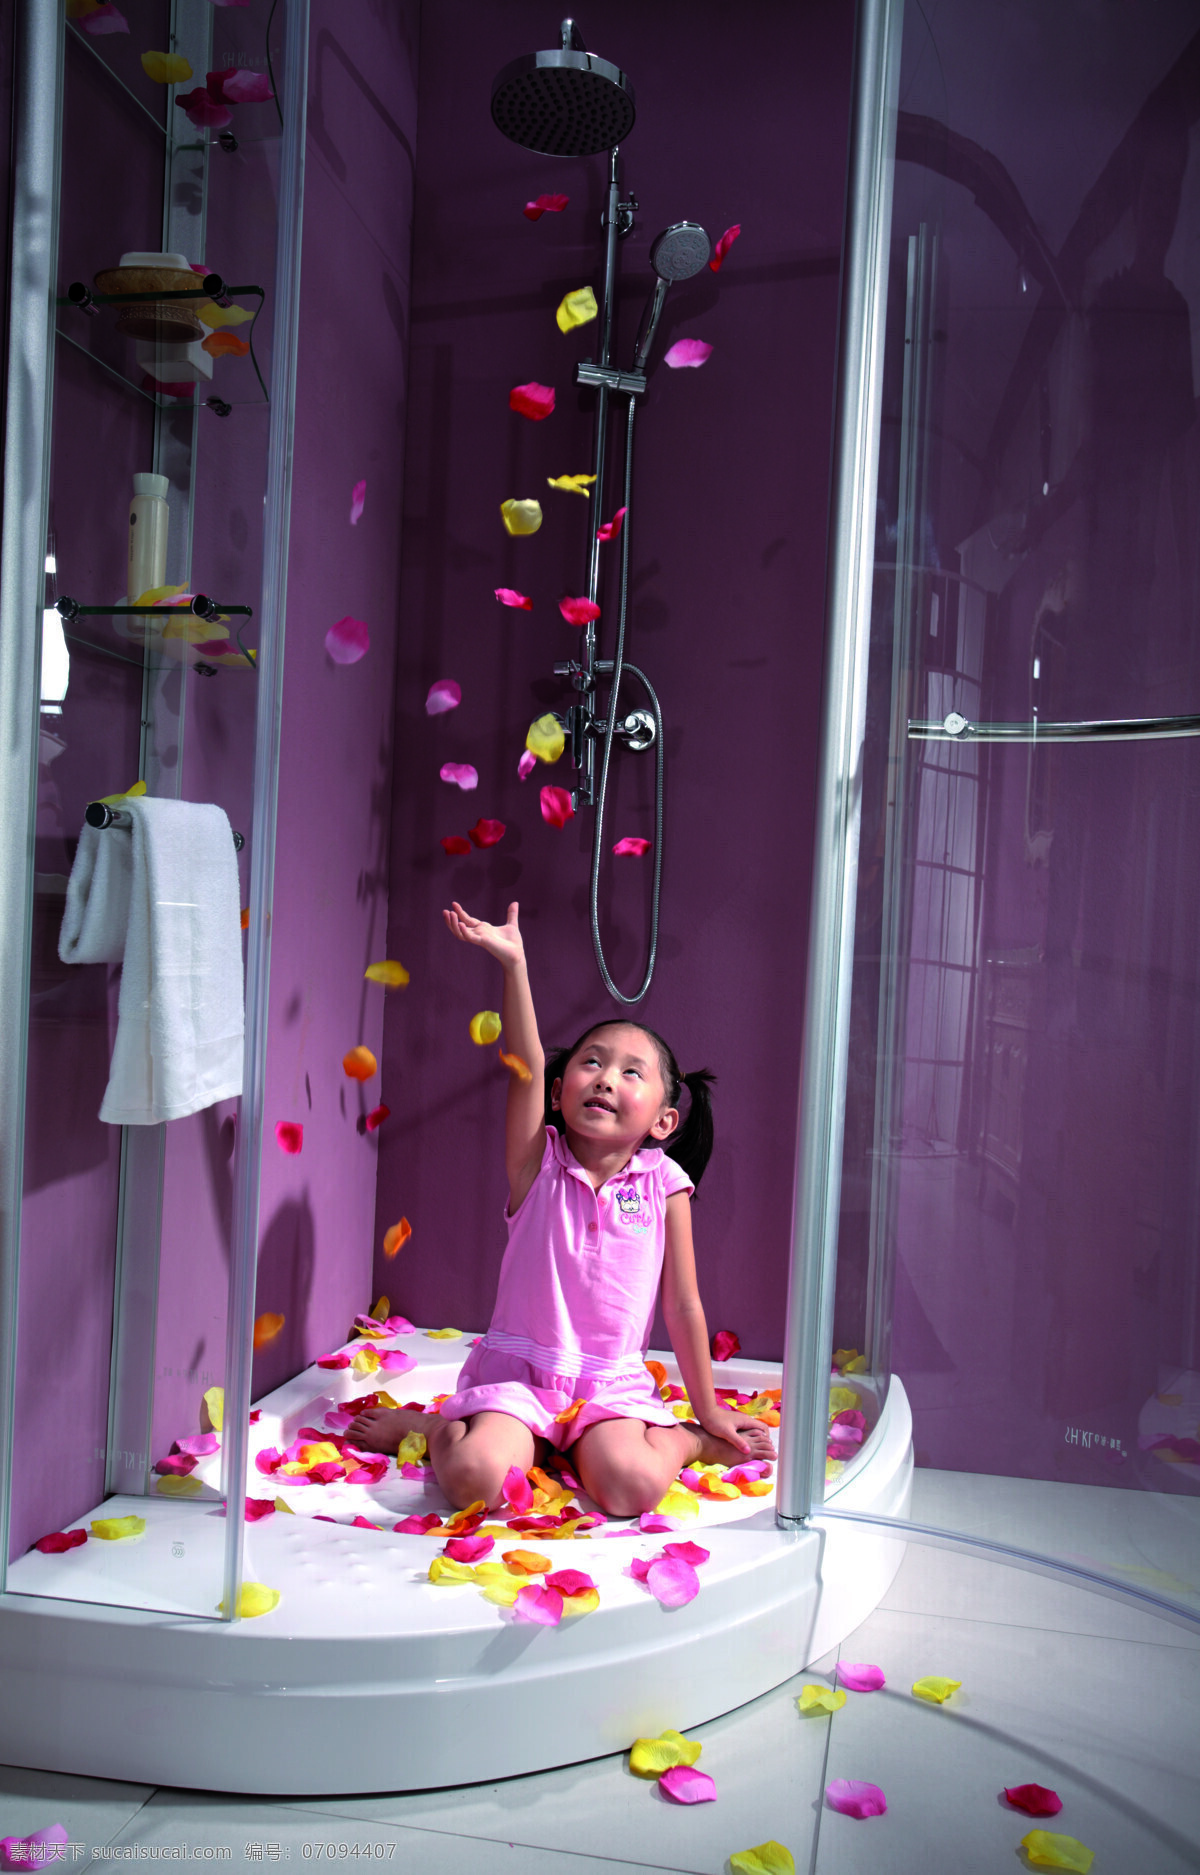 可爱宝宝 可爱 小女孩 花瓣 淋浴房 毛巾 美丽 粉色衣服 坐着的小女孩 日常生活 人物图库